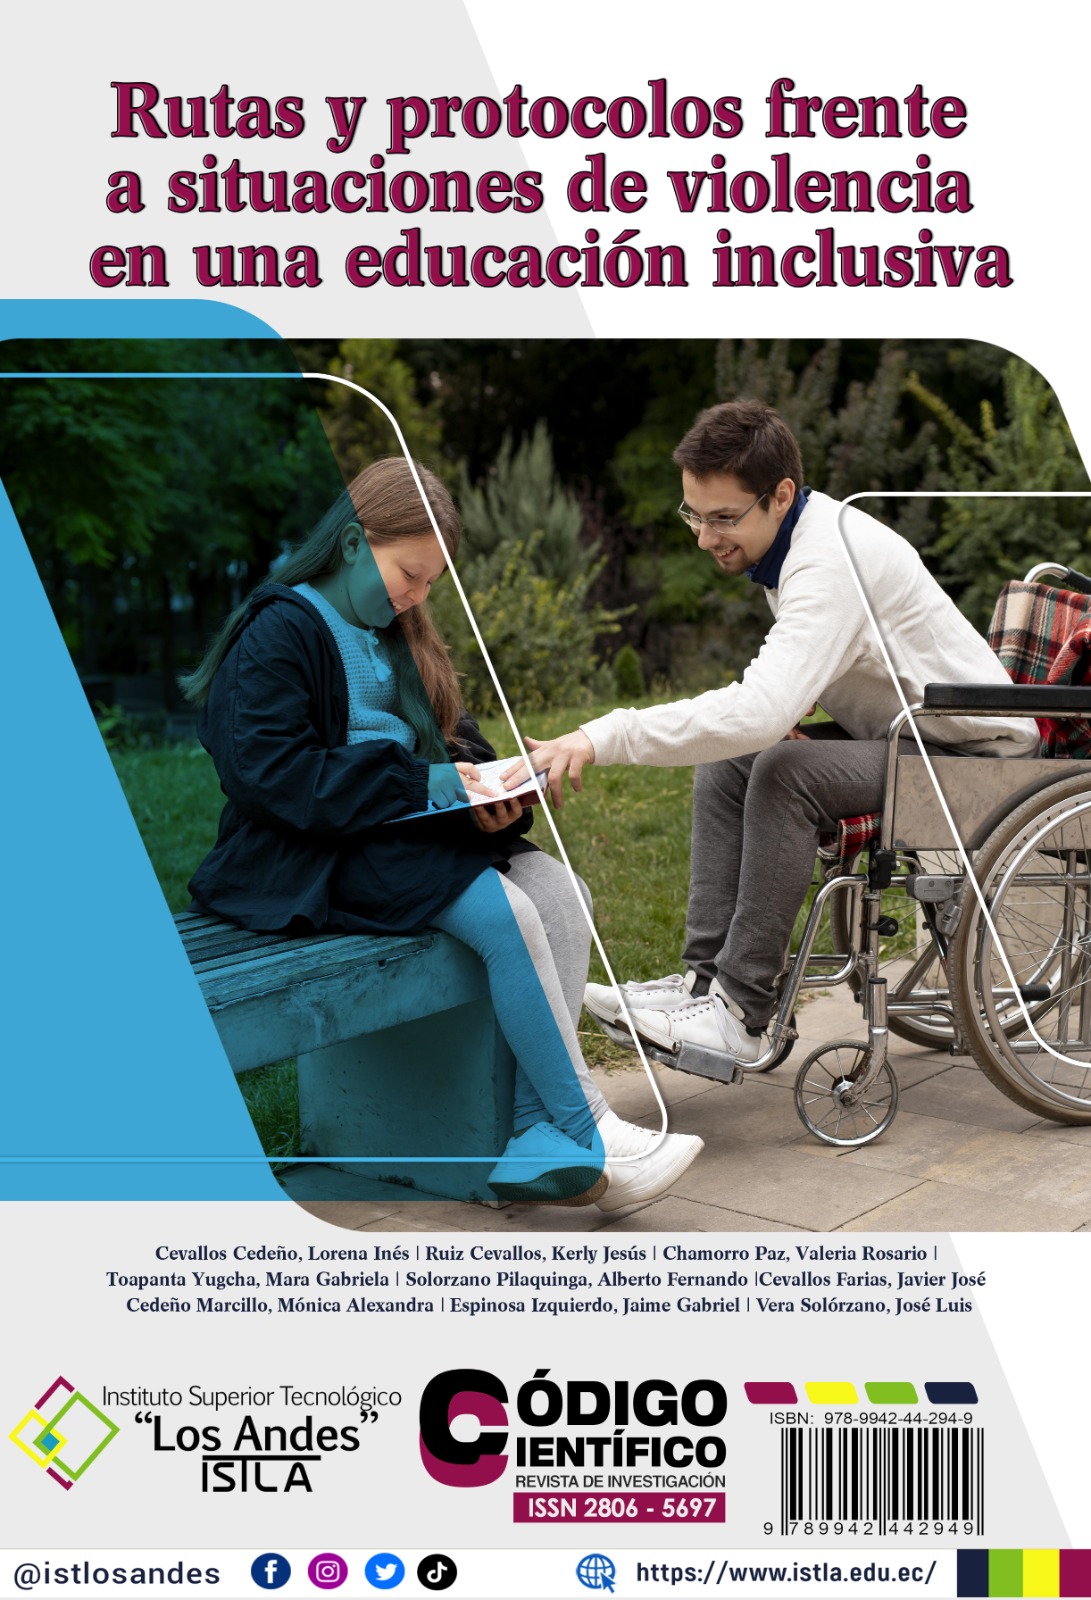 					Ver 2023: Rutas y protocolos frente a situaciones de violencia en una educación inclusiva
				